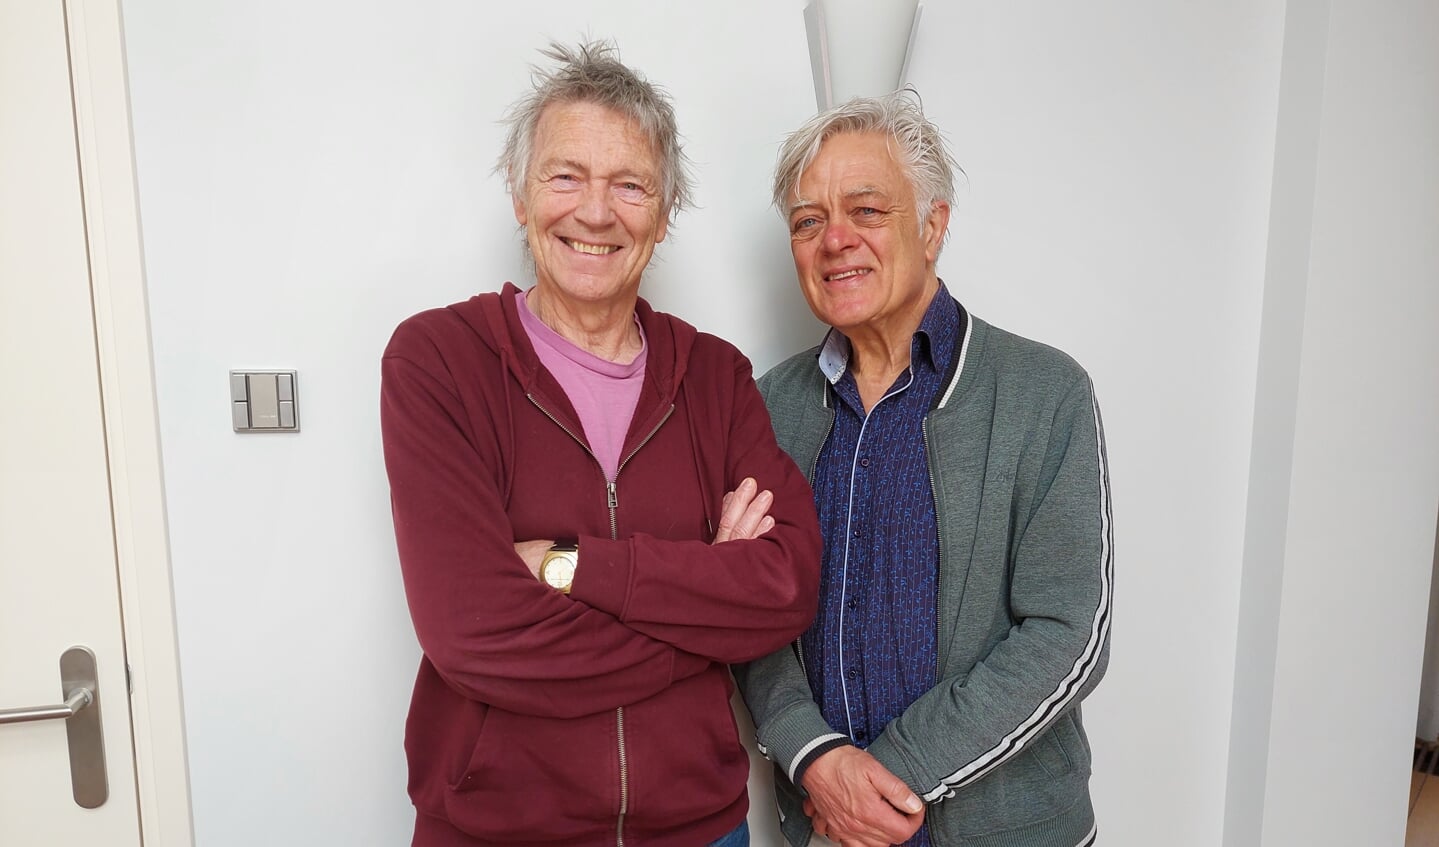 Muzikale vrienden Gerritsen en Stips staan aanstaande vrijdag met Supersister Projekt '22 in het Paard. 'Op de kop af 50 jaar terug stond ik er voor het eerst”, zegt Robert Jan.